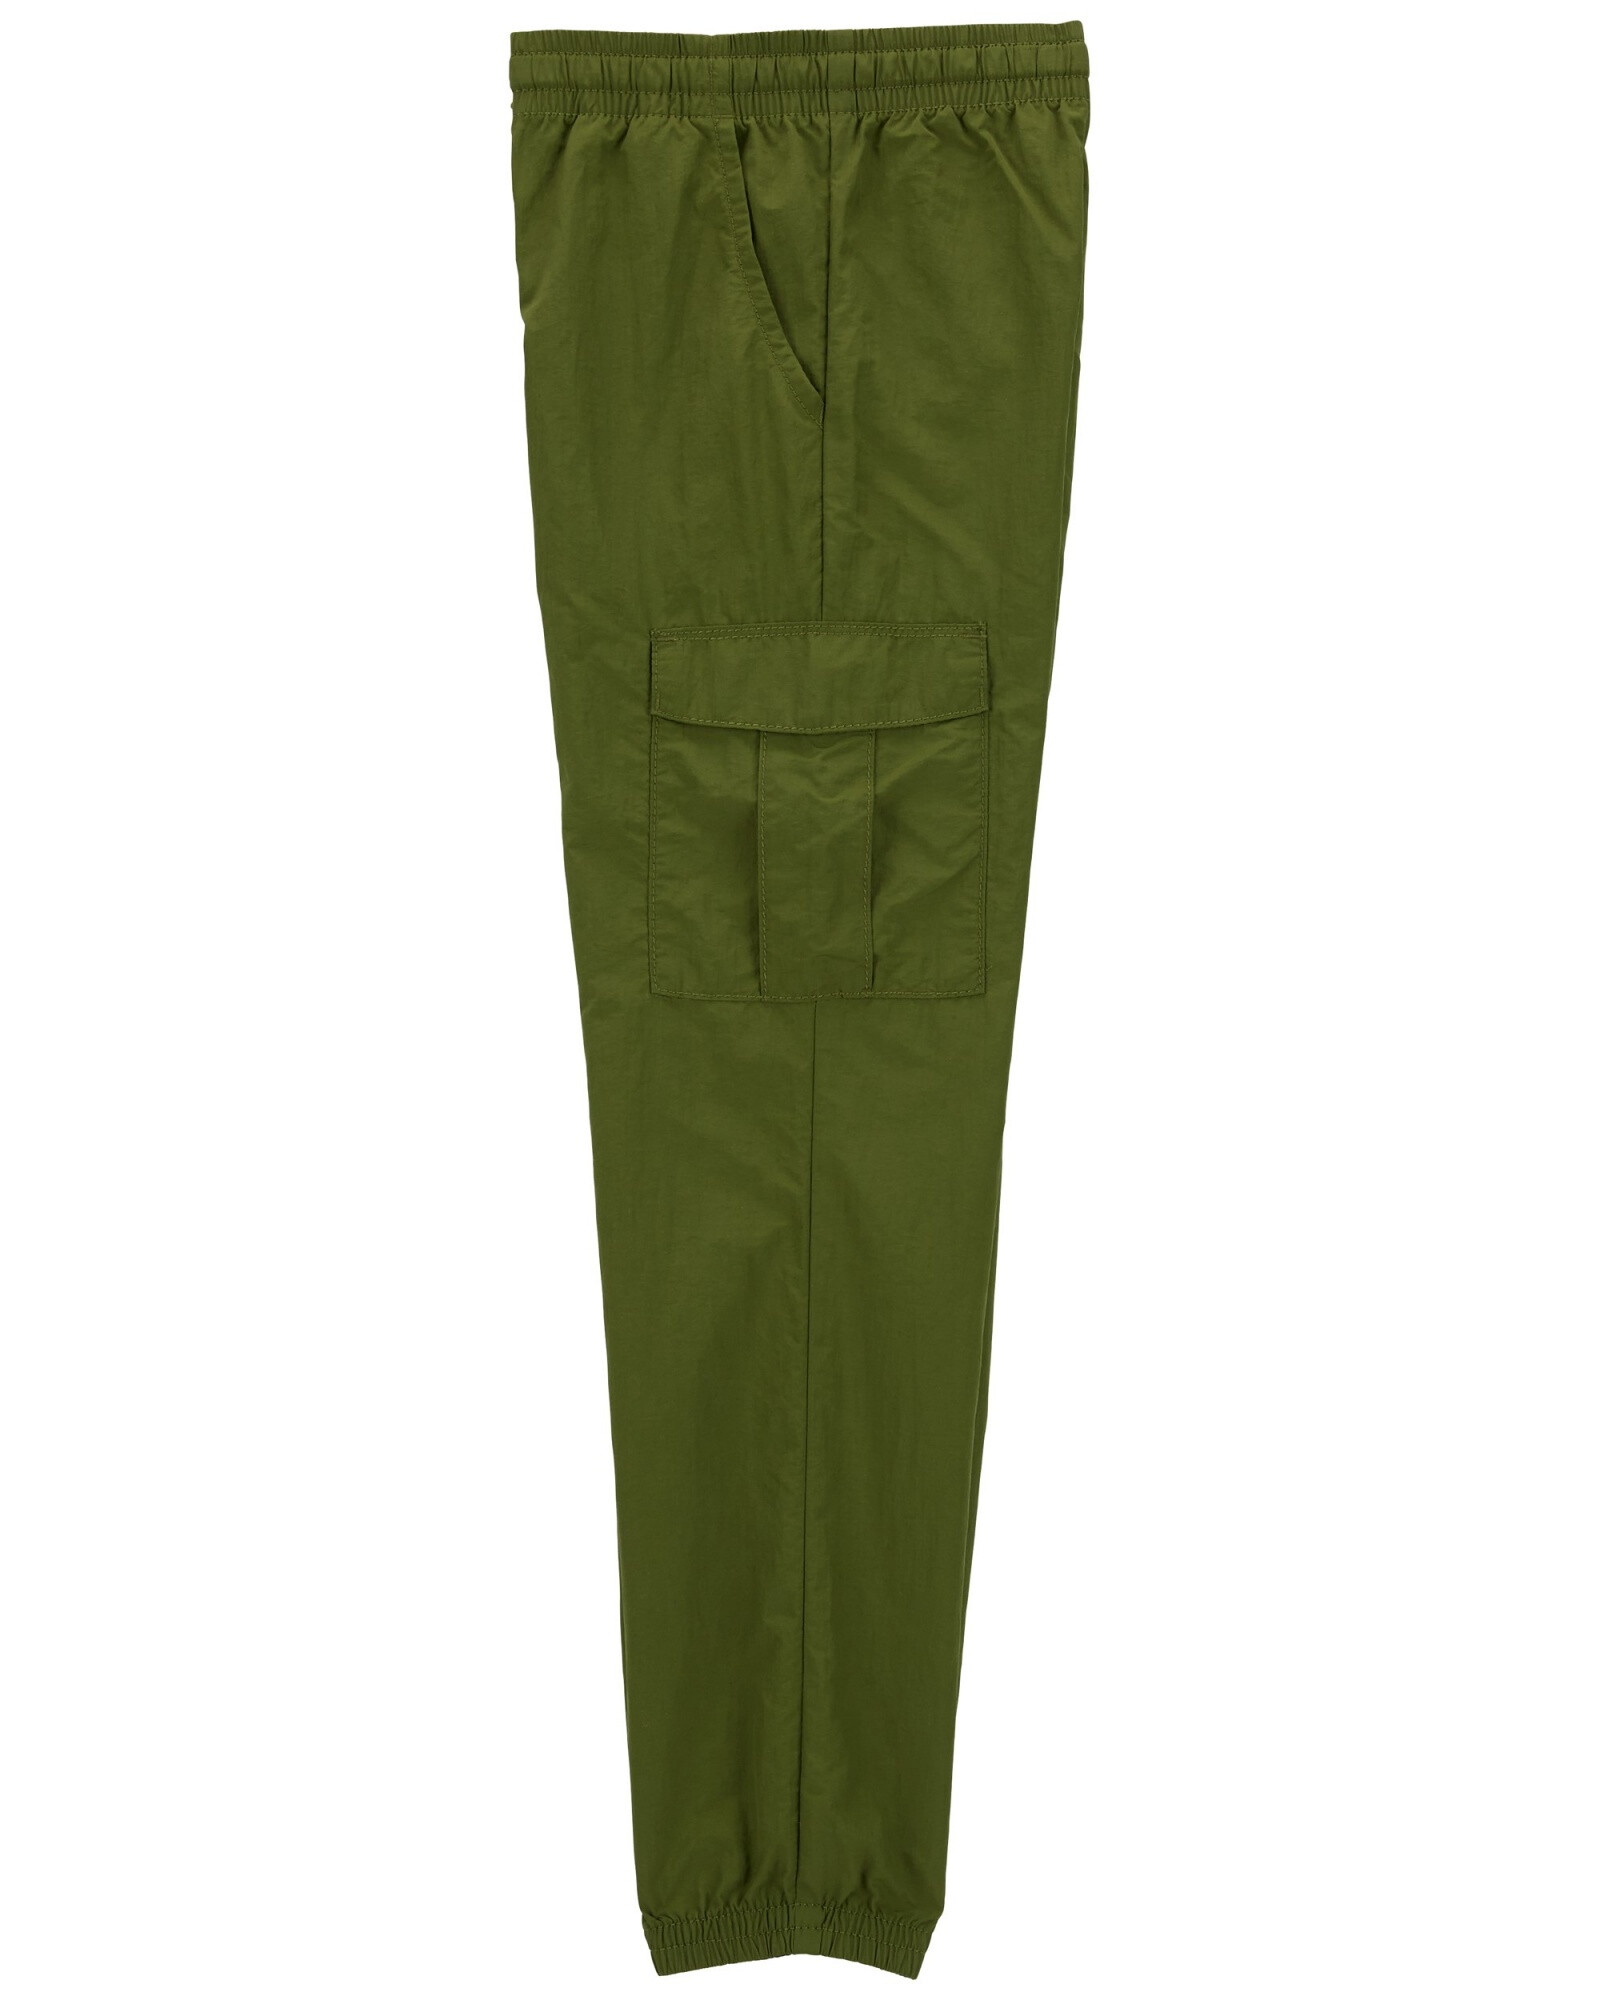 Pantalón deportivo de nylon, verde. Talles 6-8 Sin color